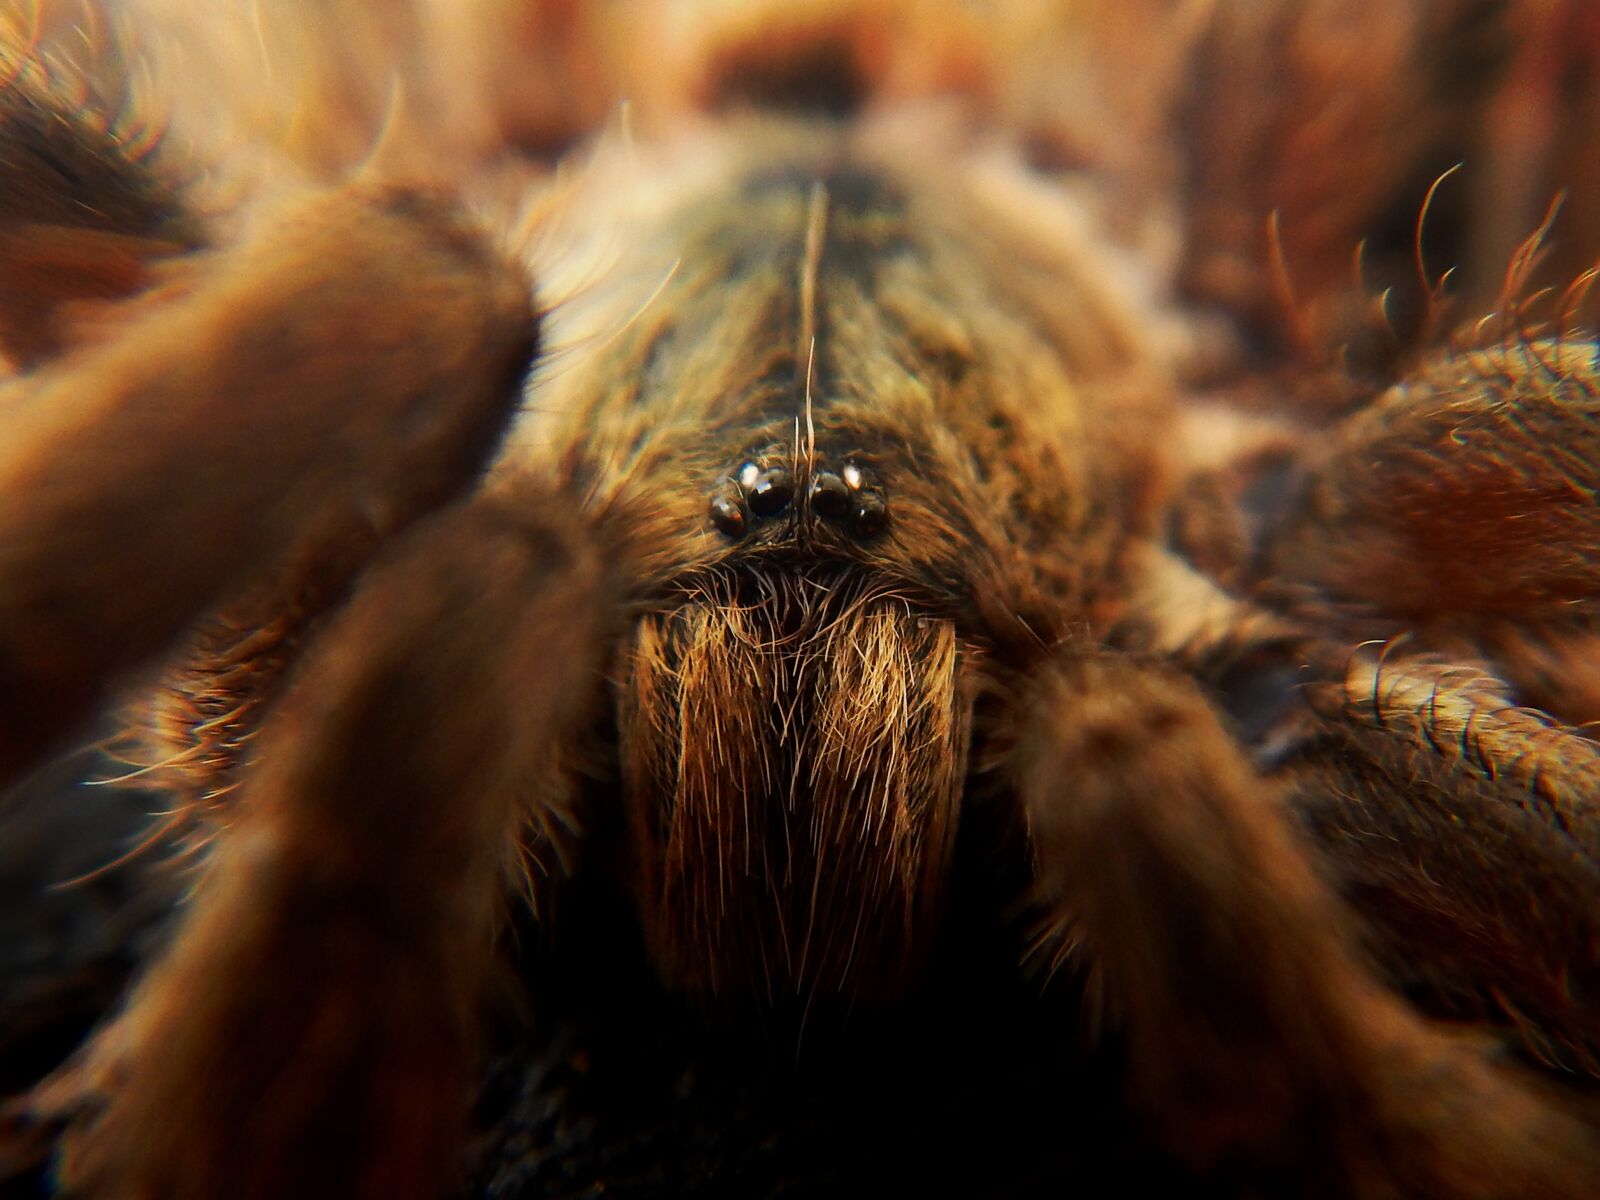 Nikon Coolpix AW110 sample photo. Spider, tarantula, web photography